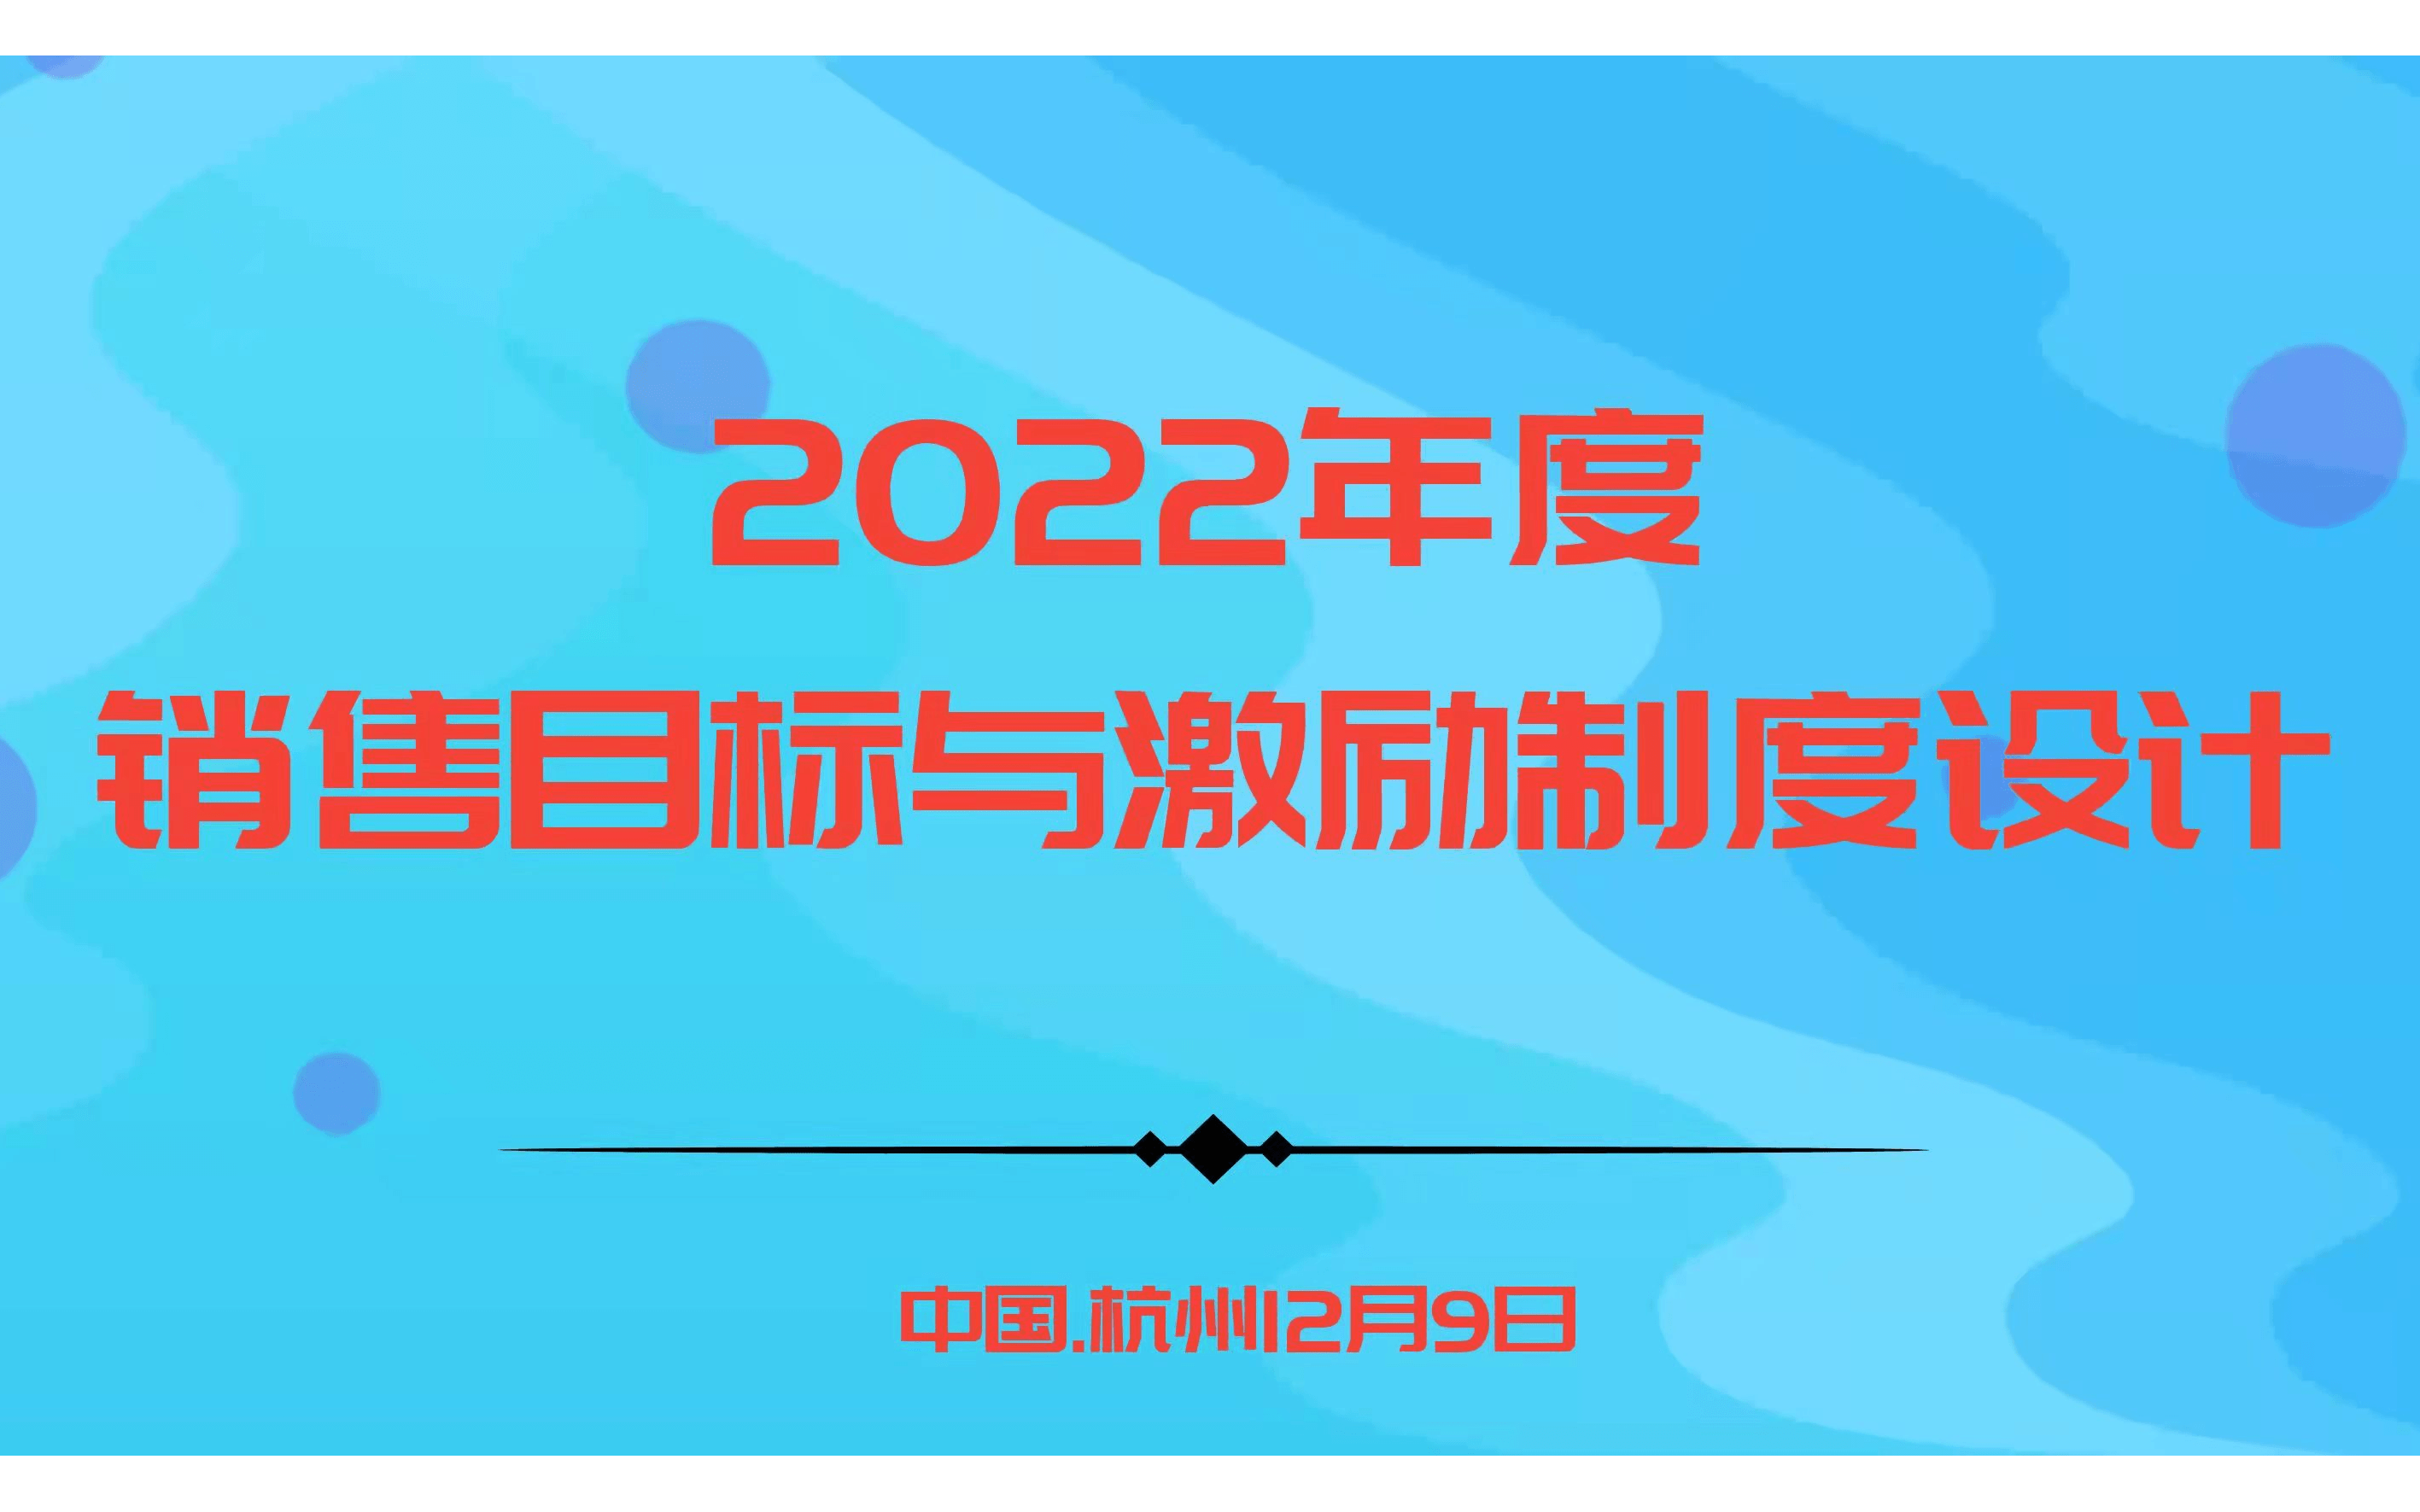 华为、阿里指定课程－2022年度销售目标与激励制度设计 |杭州12.9欧图欧商学院